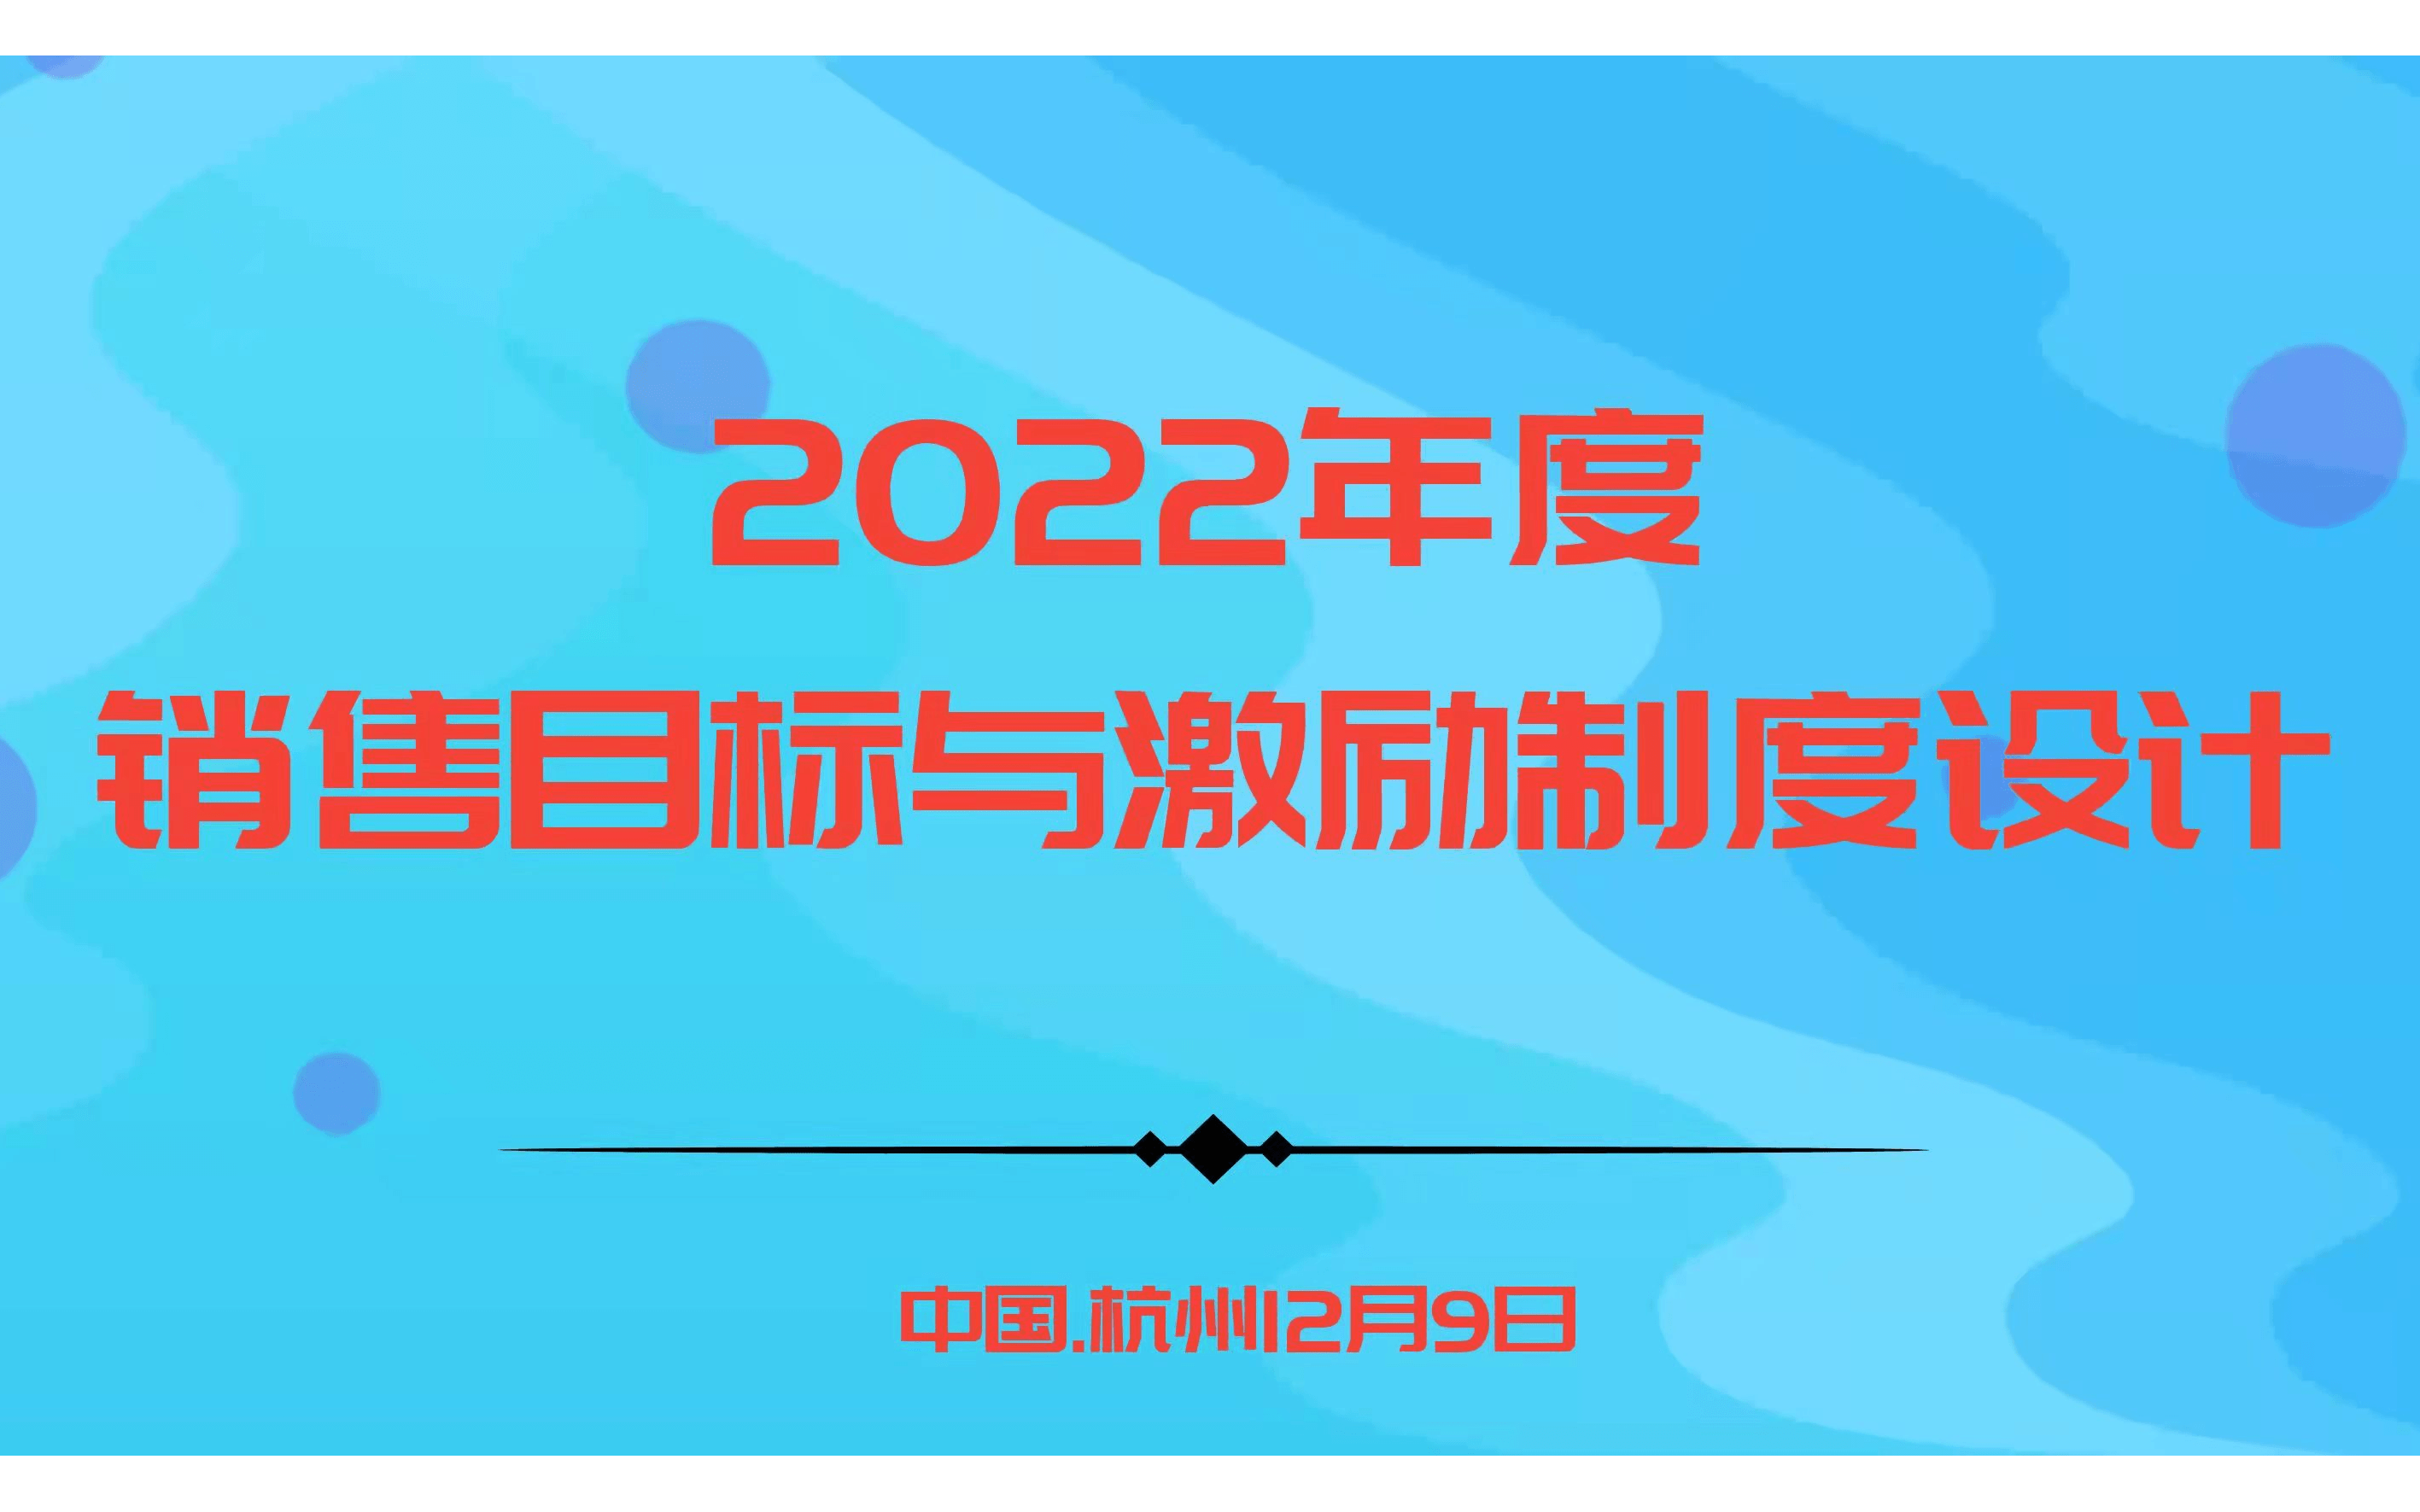 华为、阿里指定课程－2022年度销售目标与激励制度设计 |杭州12.9欧图欧商学院